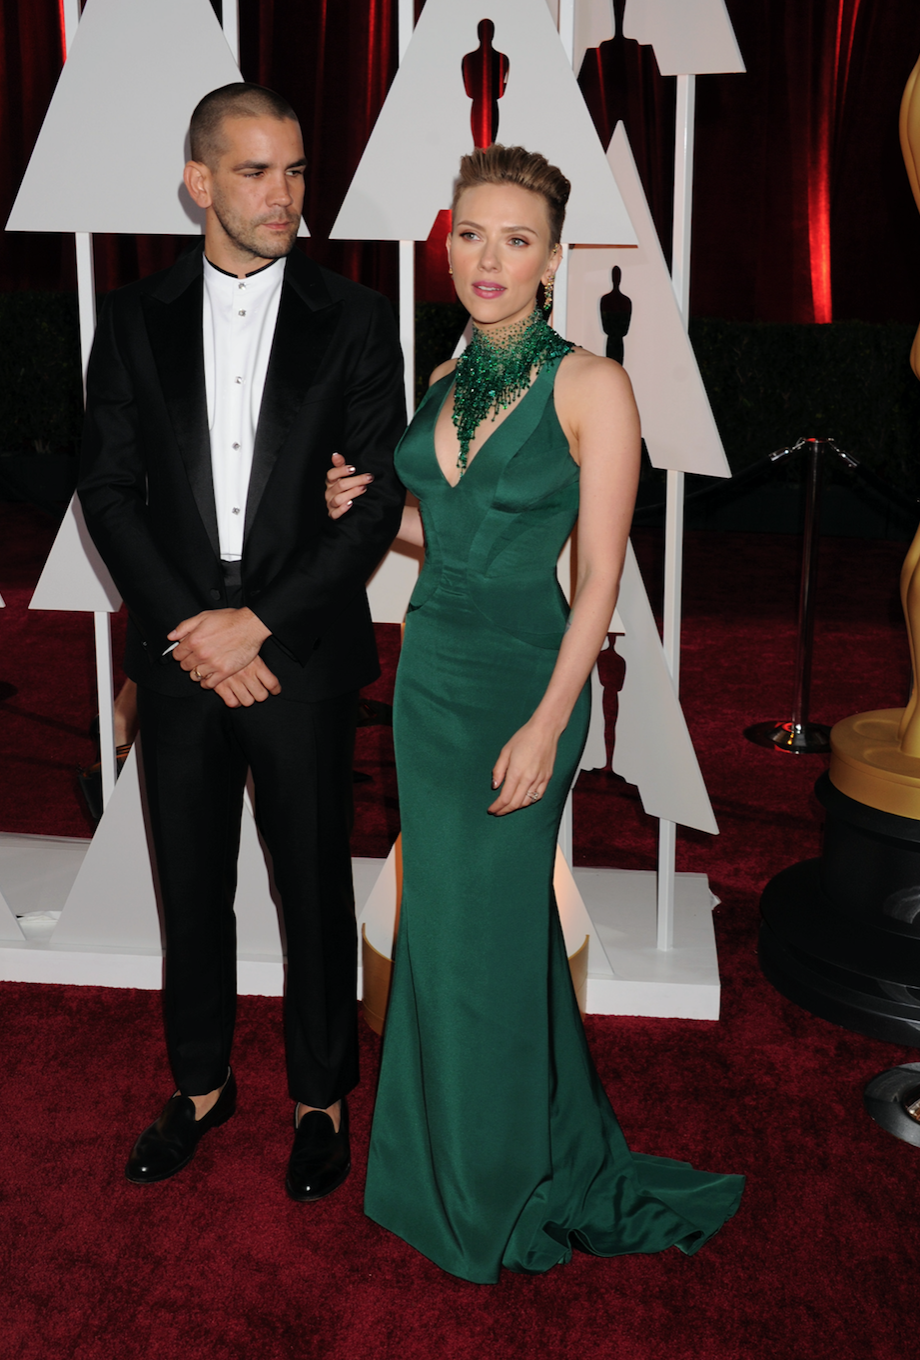 Scarlett Johansson (R) and Romain Dauriac at the Oscars